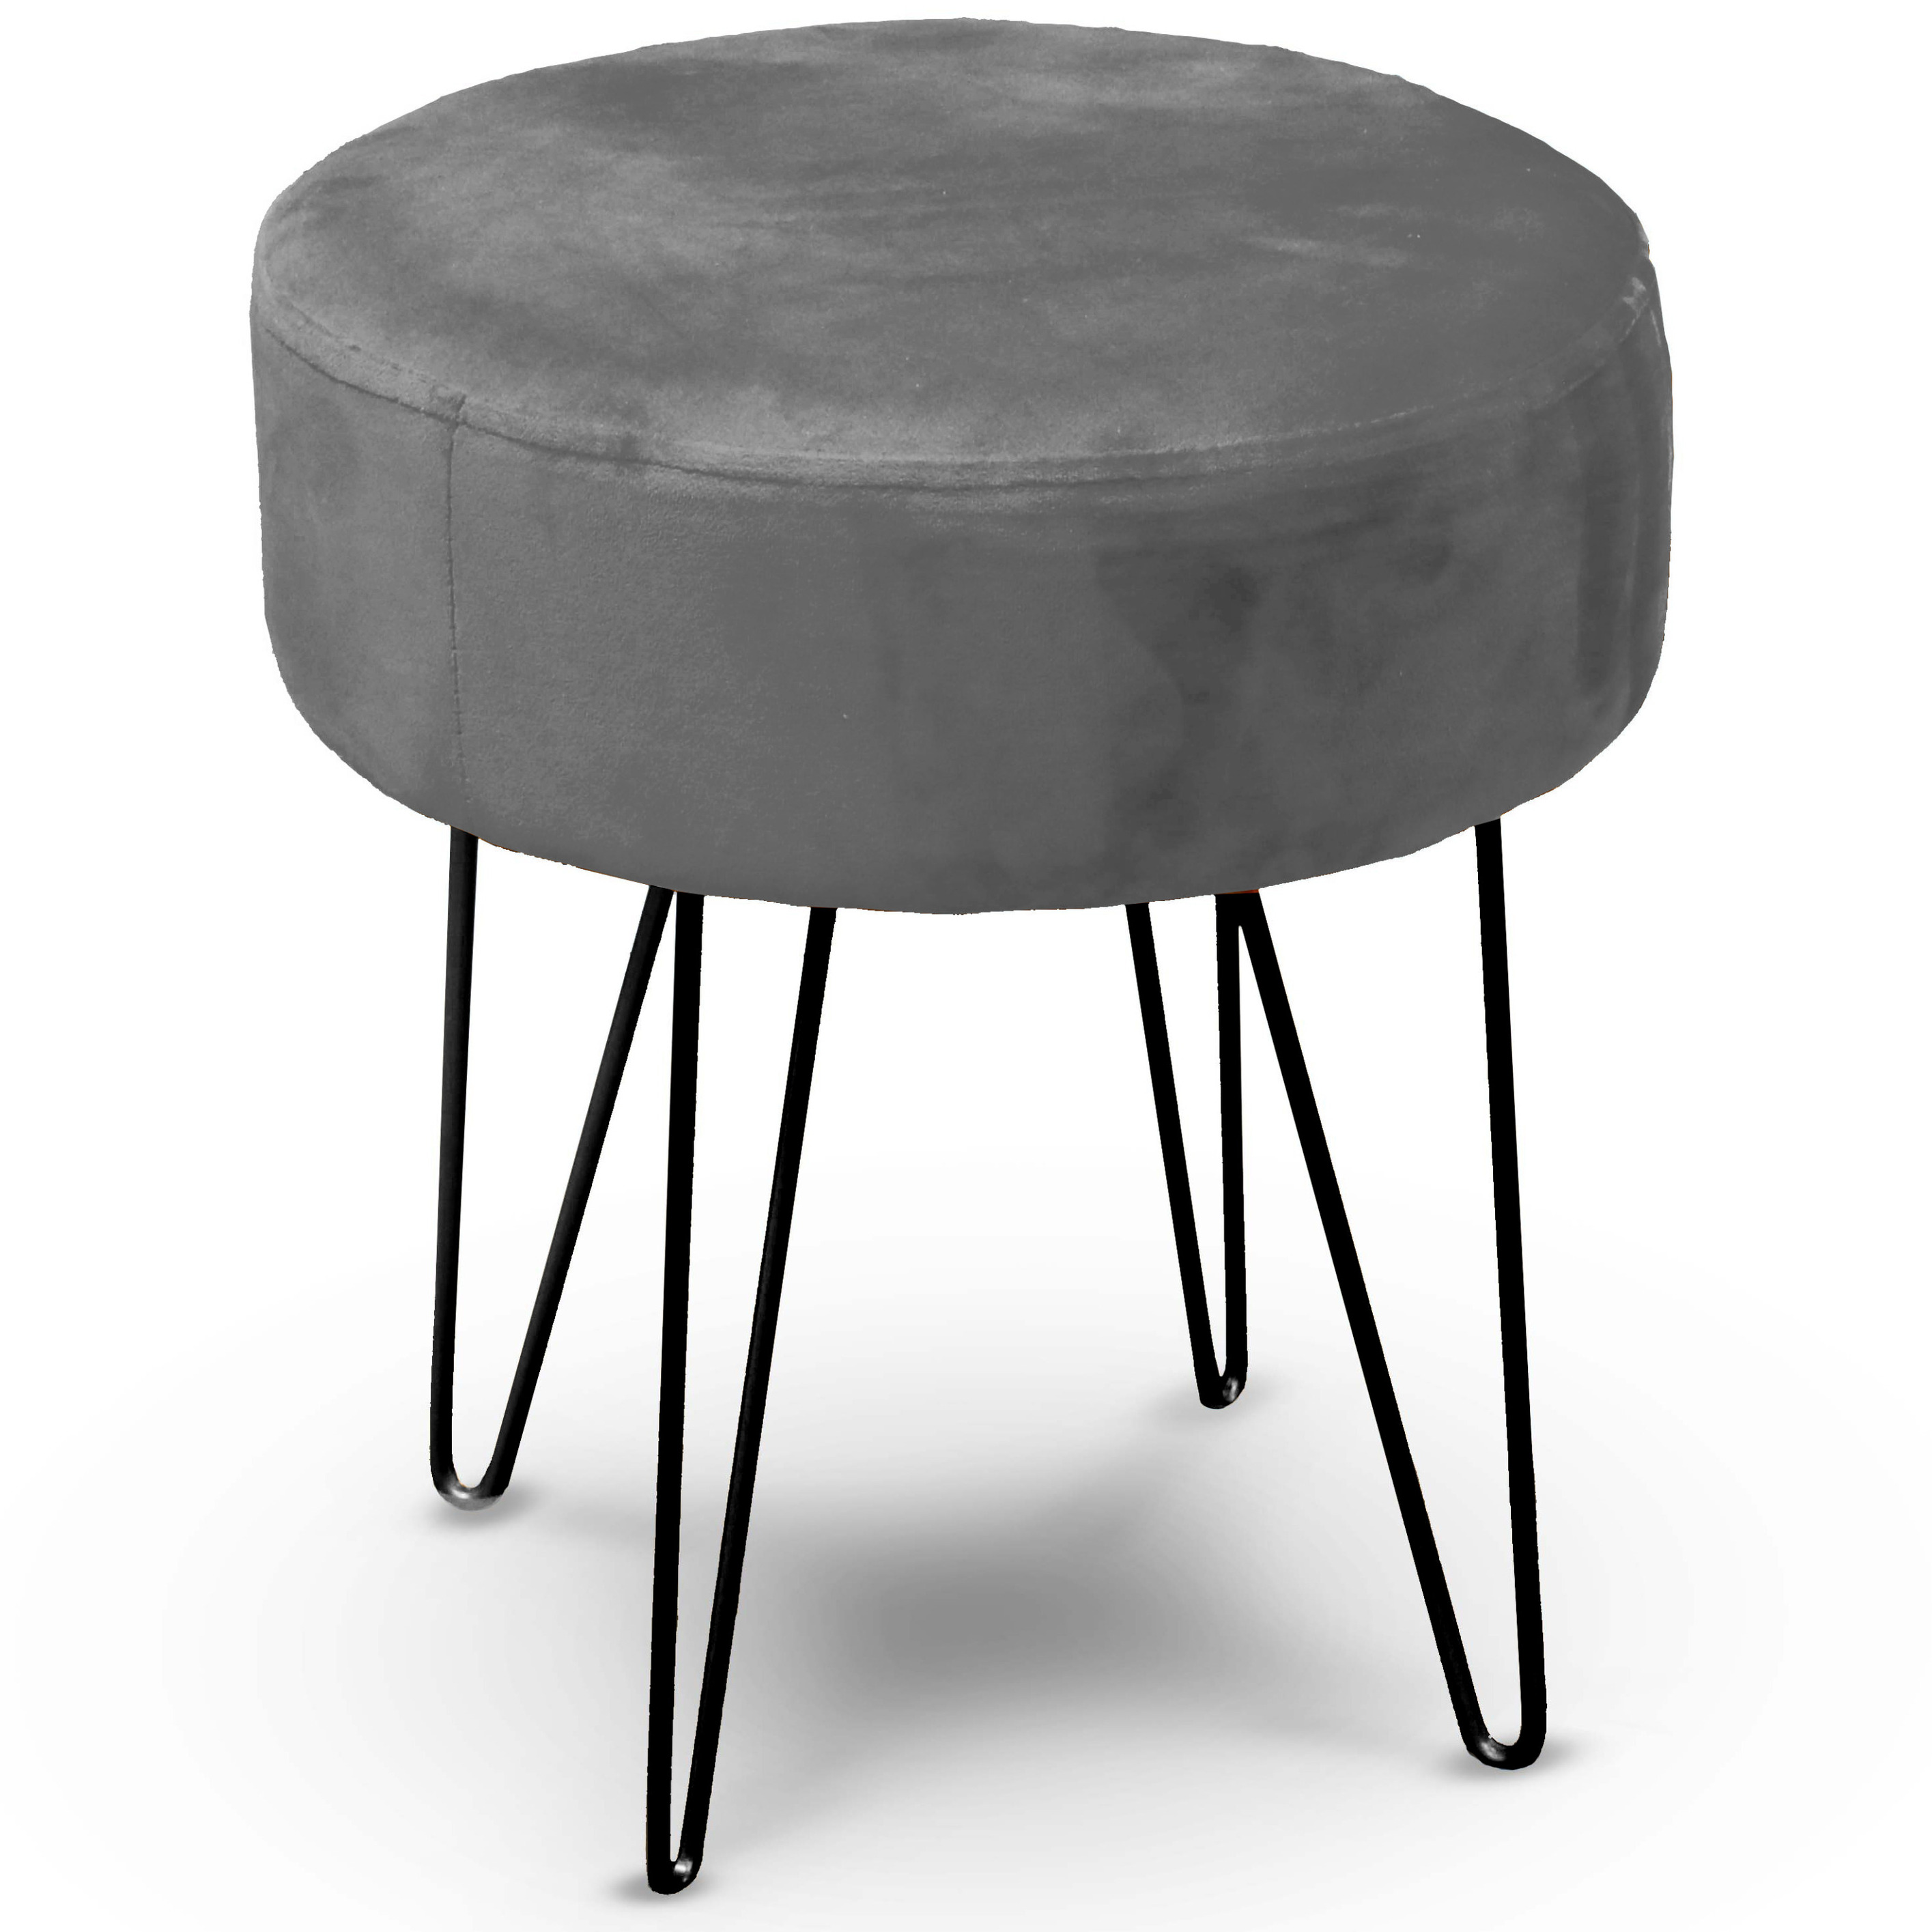 Unique Living Velvet kruk Davy - grijs - metaal/stof - D35 x H40 cm - bijzet stoeltjes -